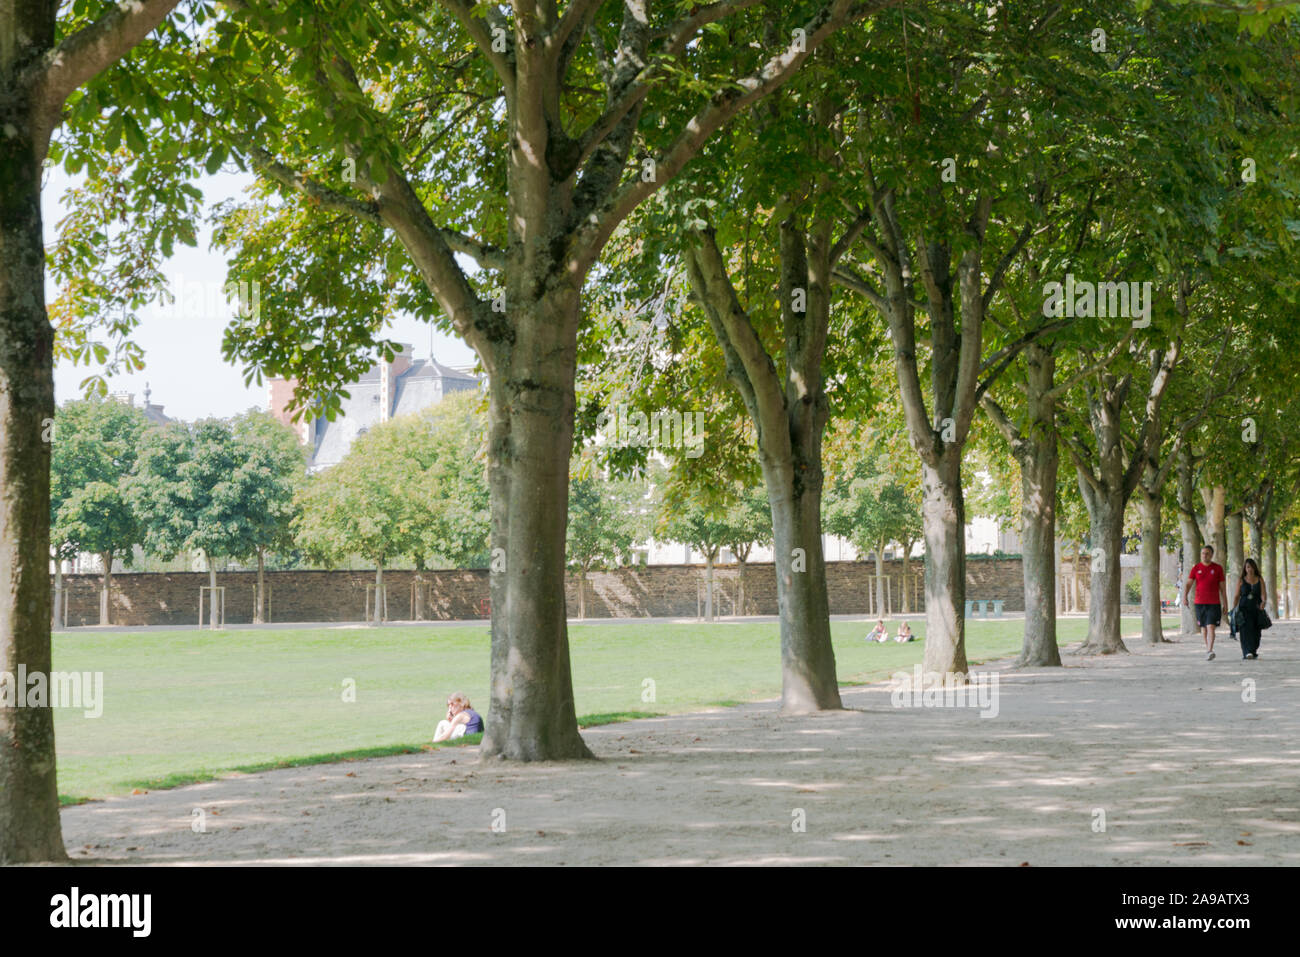 Rennes, Ile-et-Vilaine / Frankreich - 26. August 2019: Leute für einen gemütlichen Spaziergang im Park Stockfoto